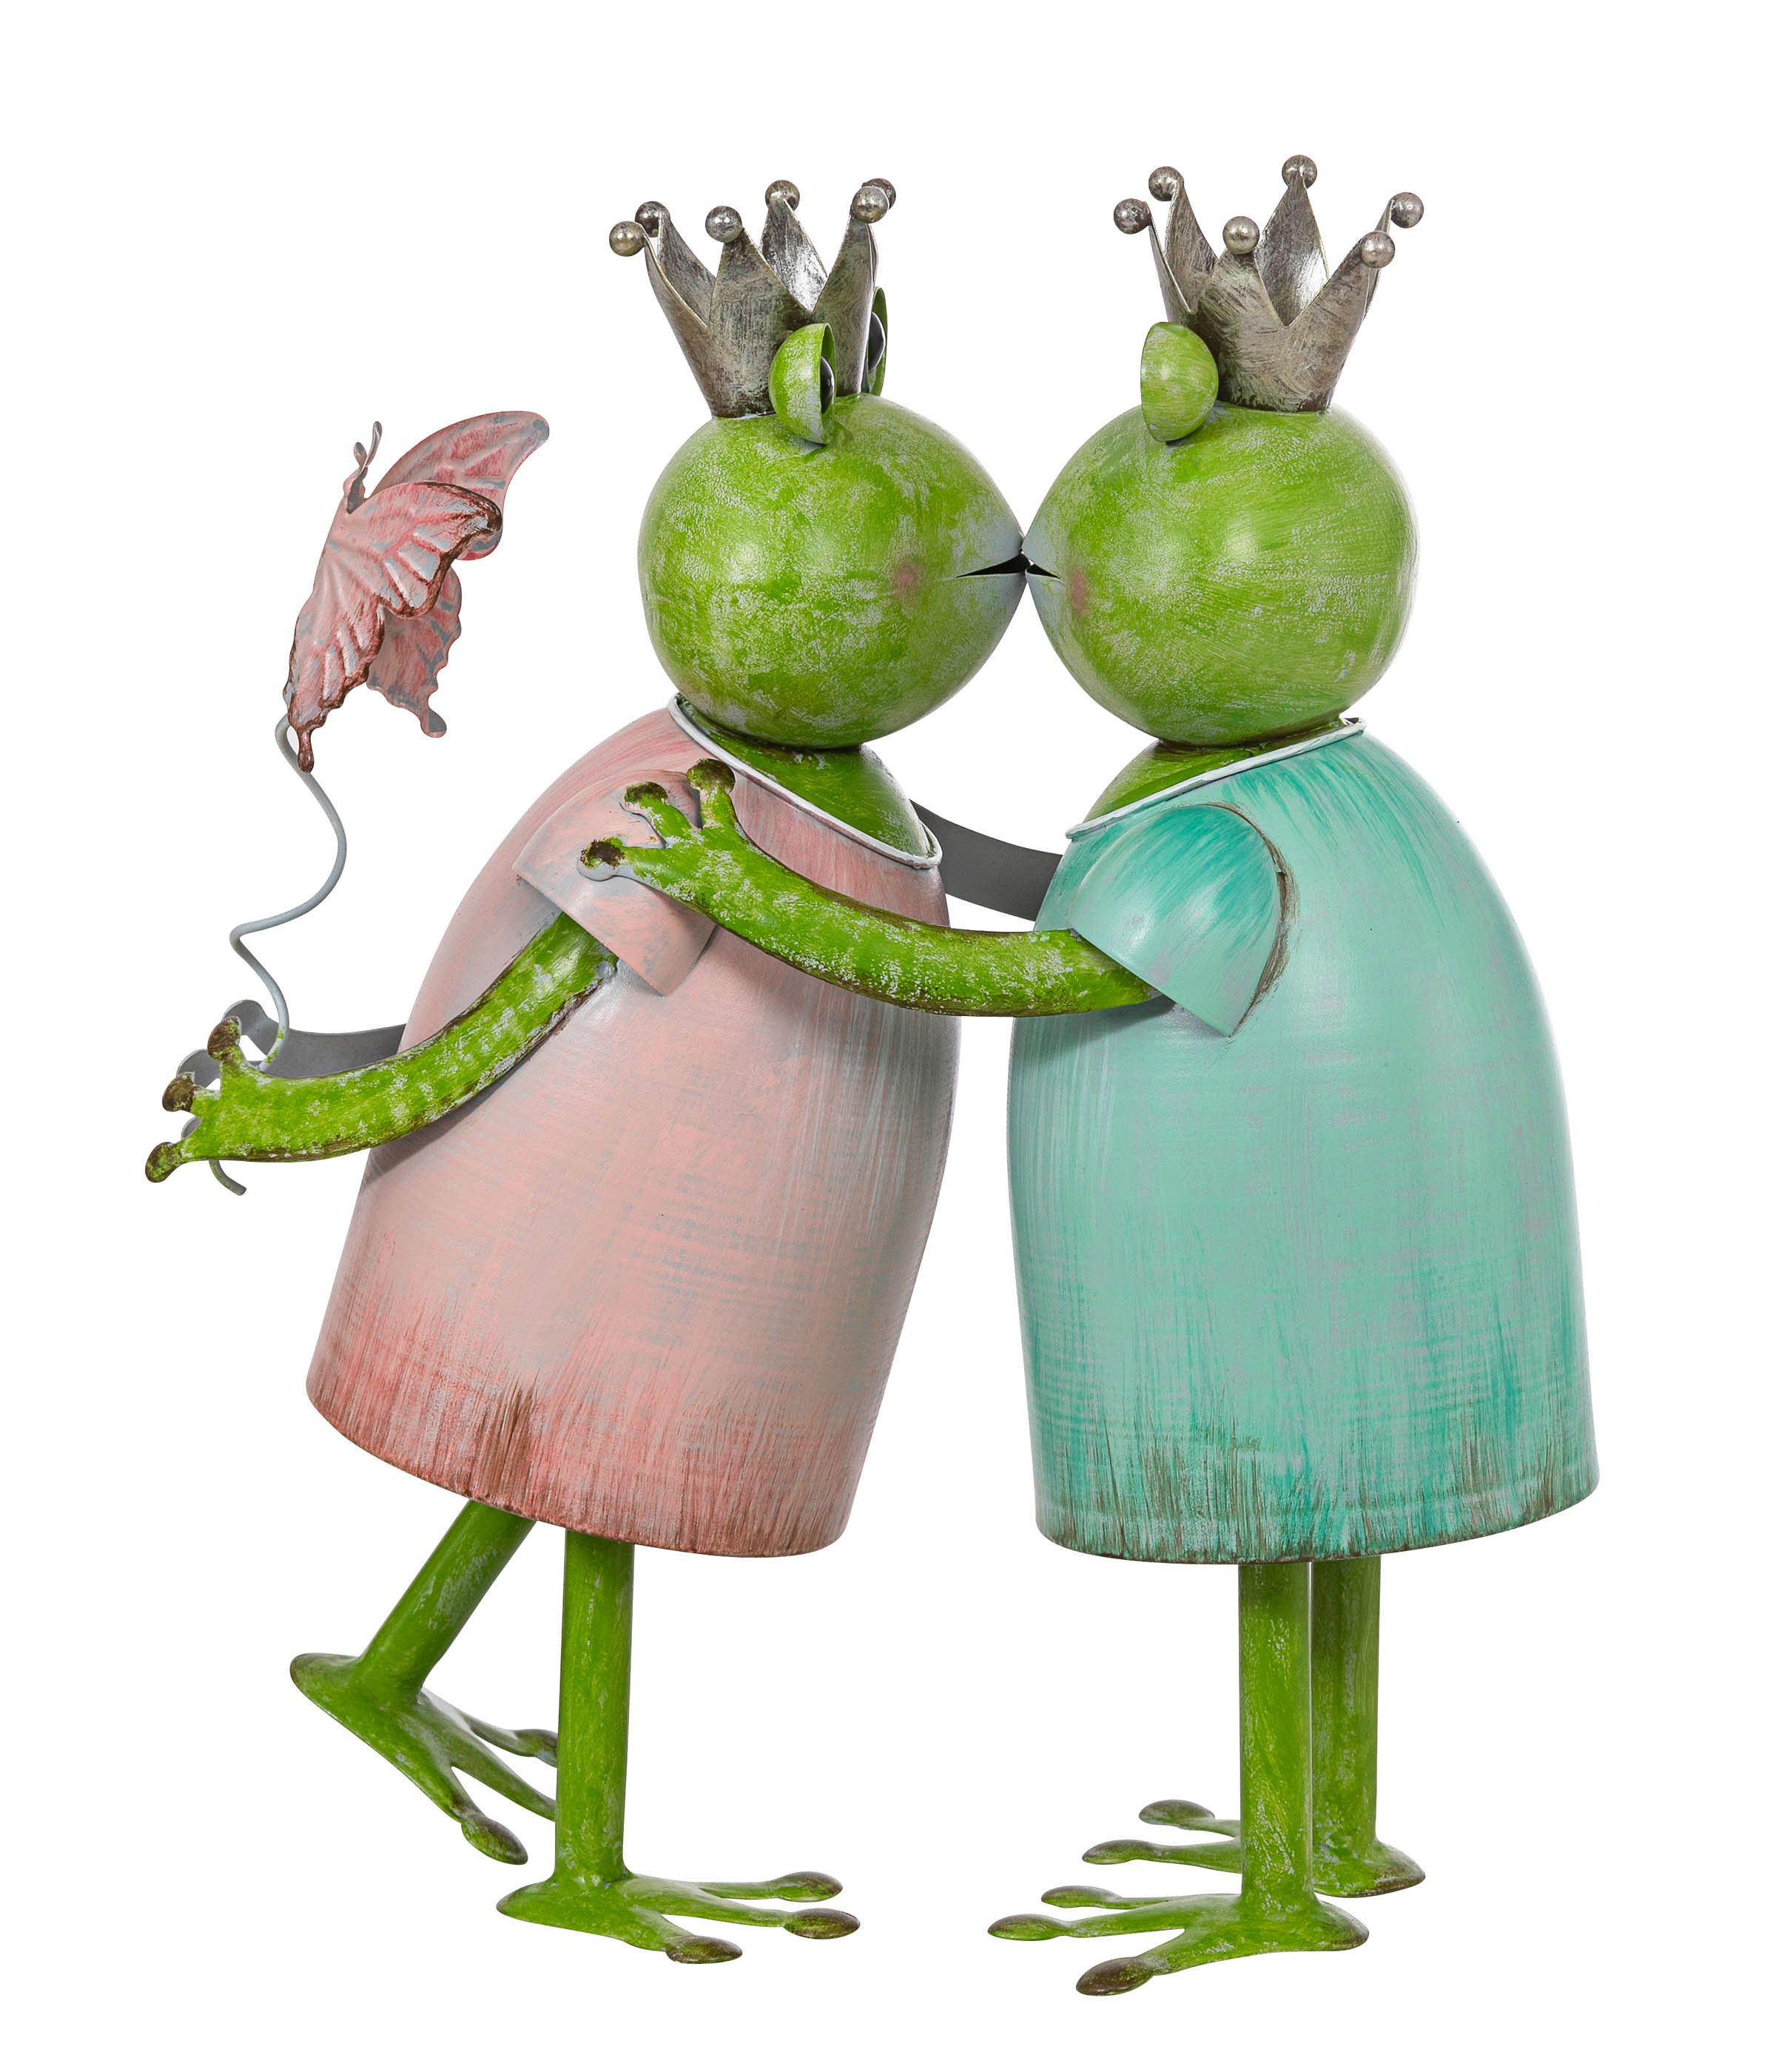 Dehner Gartenfigur Froschpaar, 25 x 23 x 14 cm, Metall, grün / rosa, lackierte, frostbeständige Gartenfigur, auch für Indoor geeignet